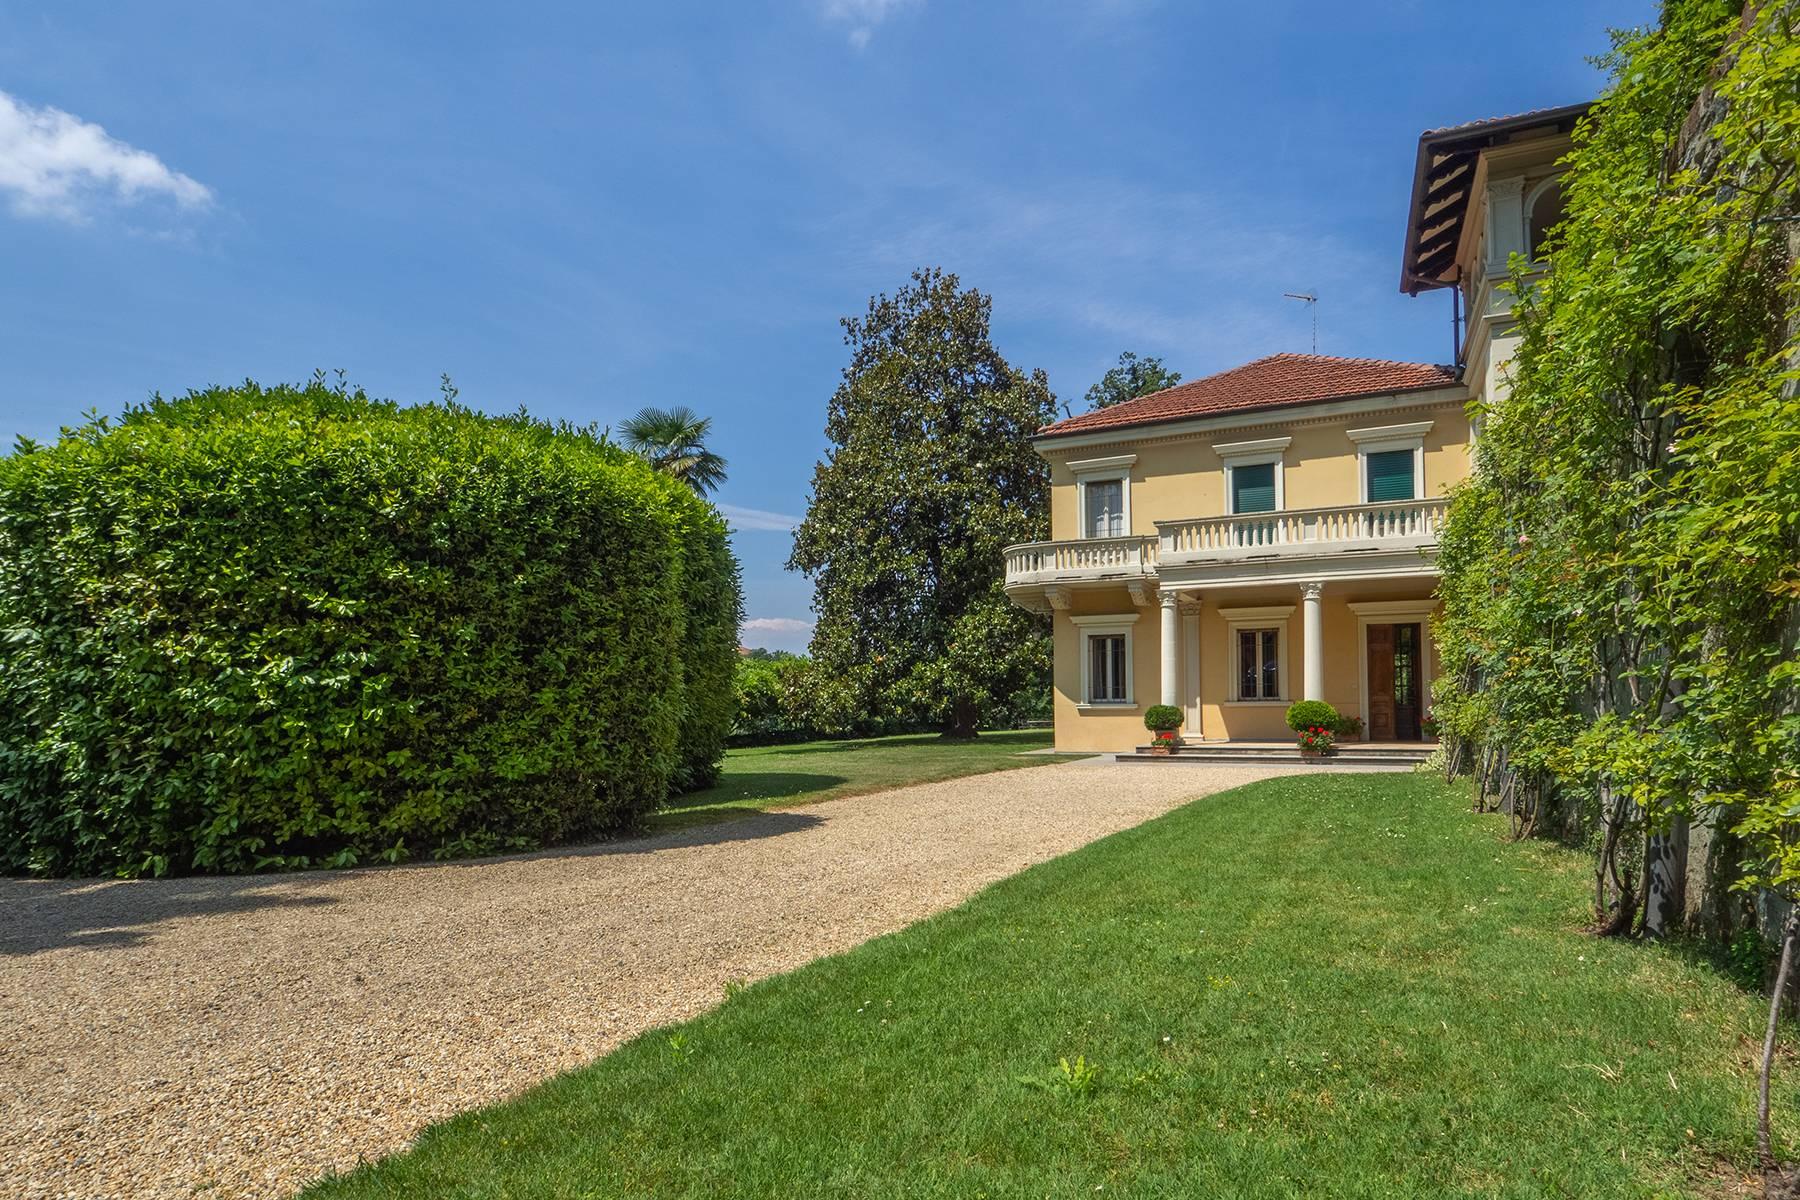 Meravigliosa villa con giardino in collina a Torino - 4